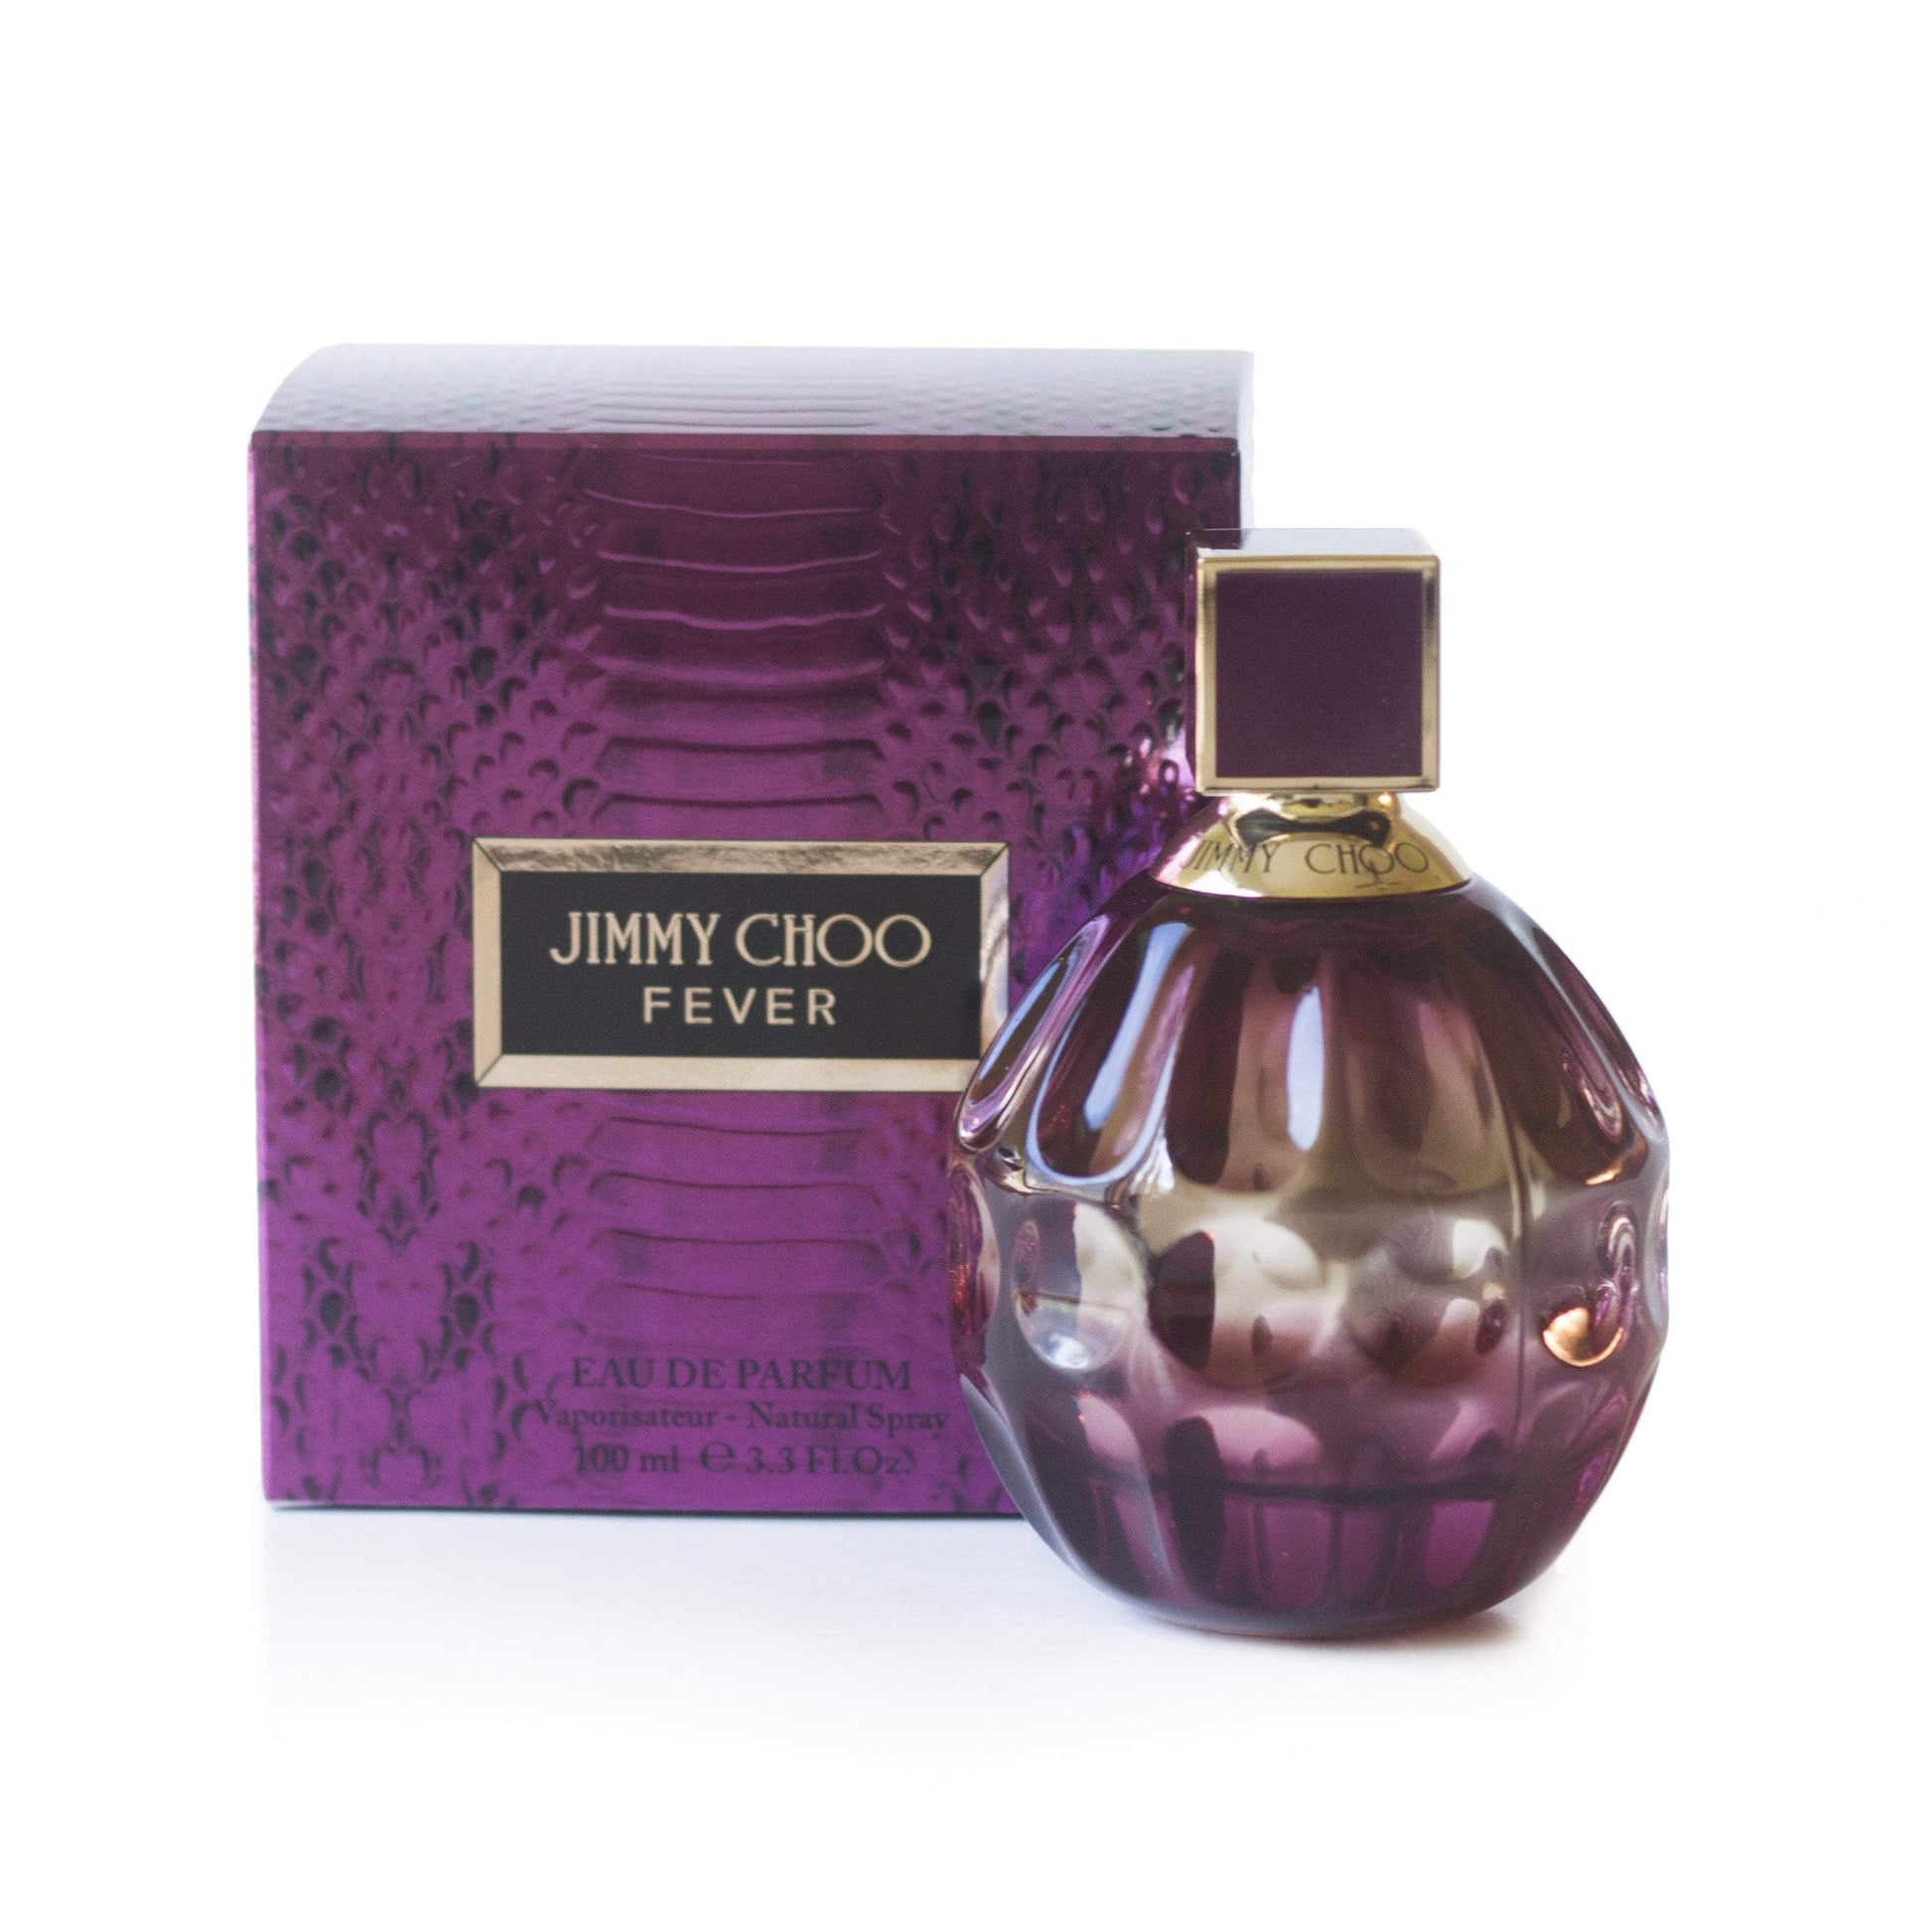 Jimmy Choo Fever Eau de Parfum Spray for Women by Jimmy Choo 3.3 oz. Click to open in modal